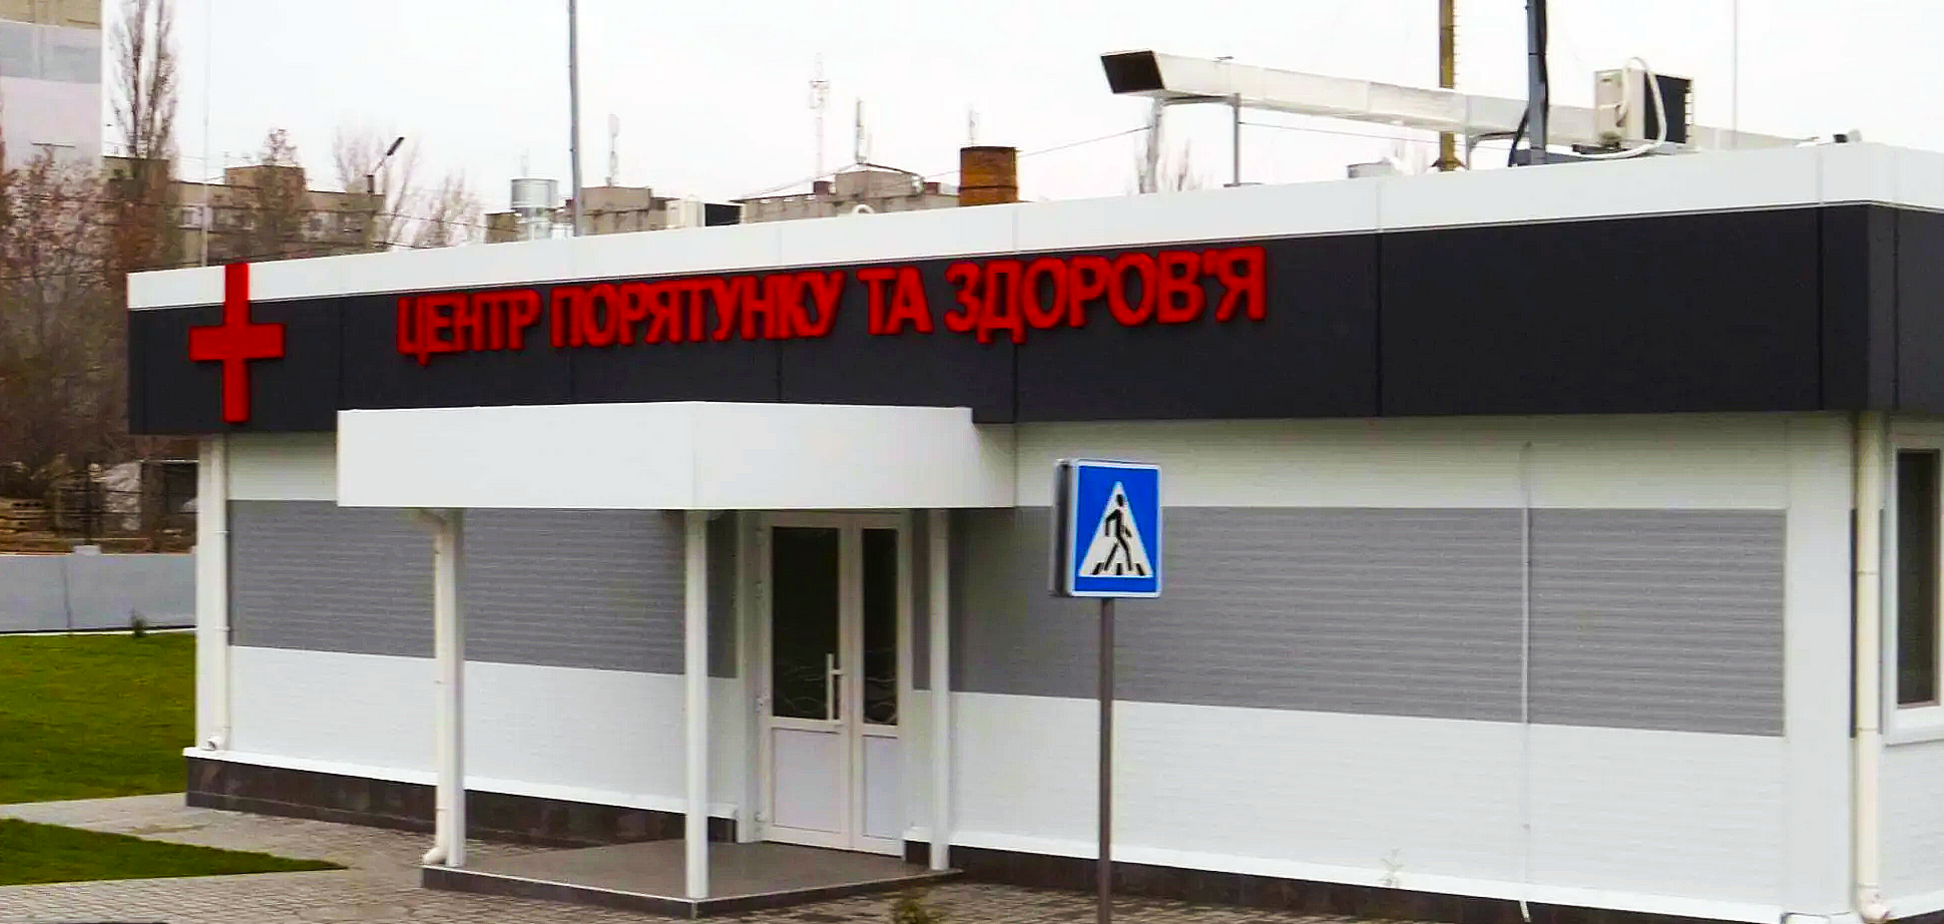 Николаевский глиноземный завод выделил 6 млн грн на поддержку созданного им антиковидного госпиталя